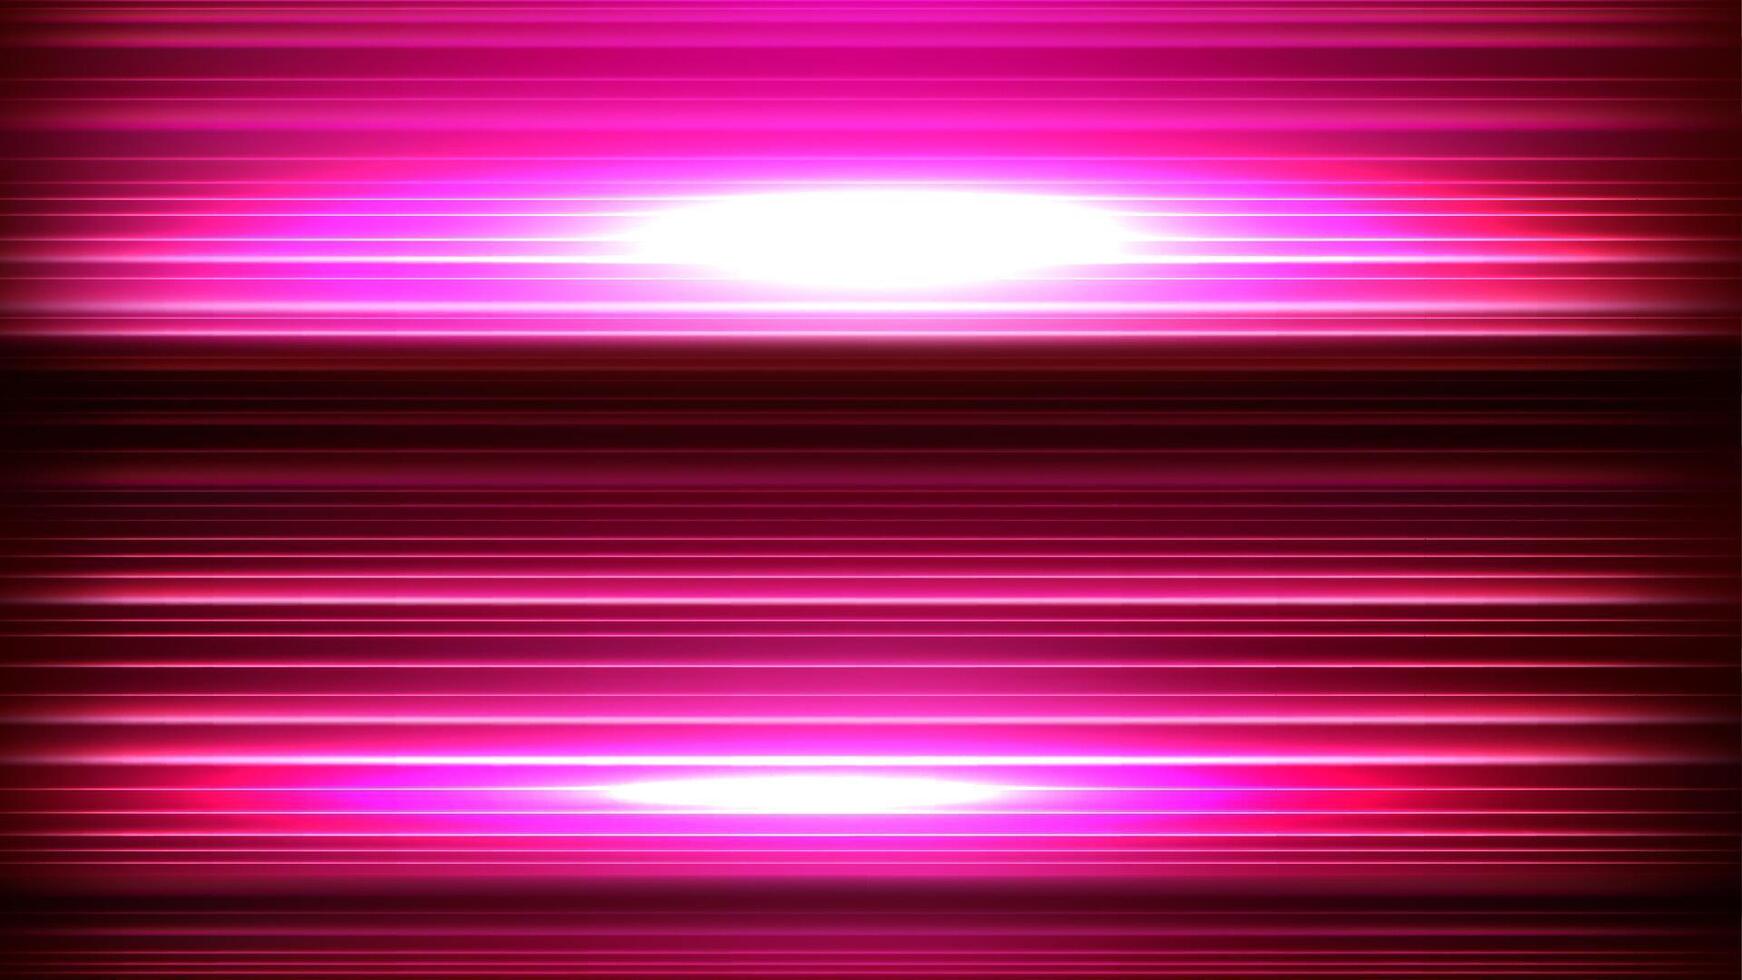 rosa hastighet ljus rörelse, vektor illustration